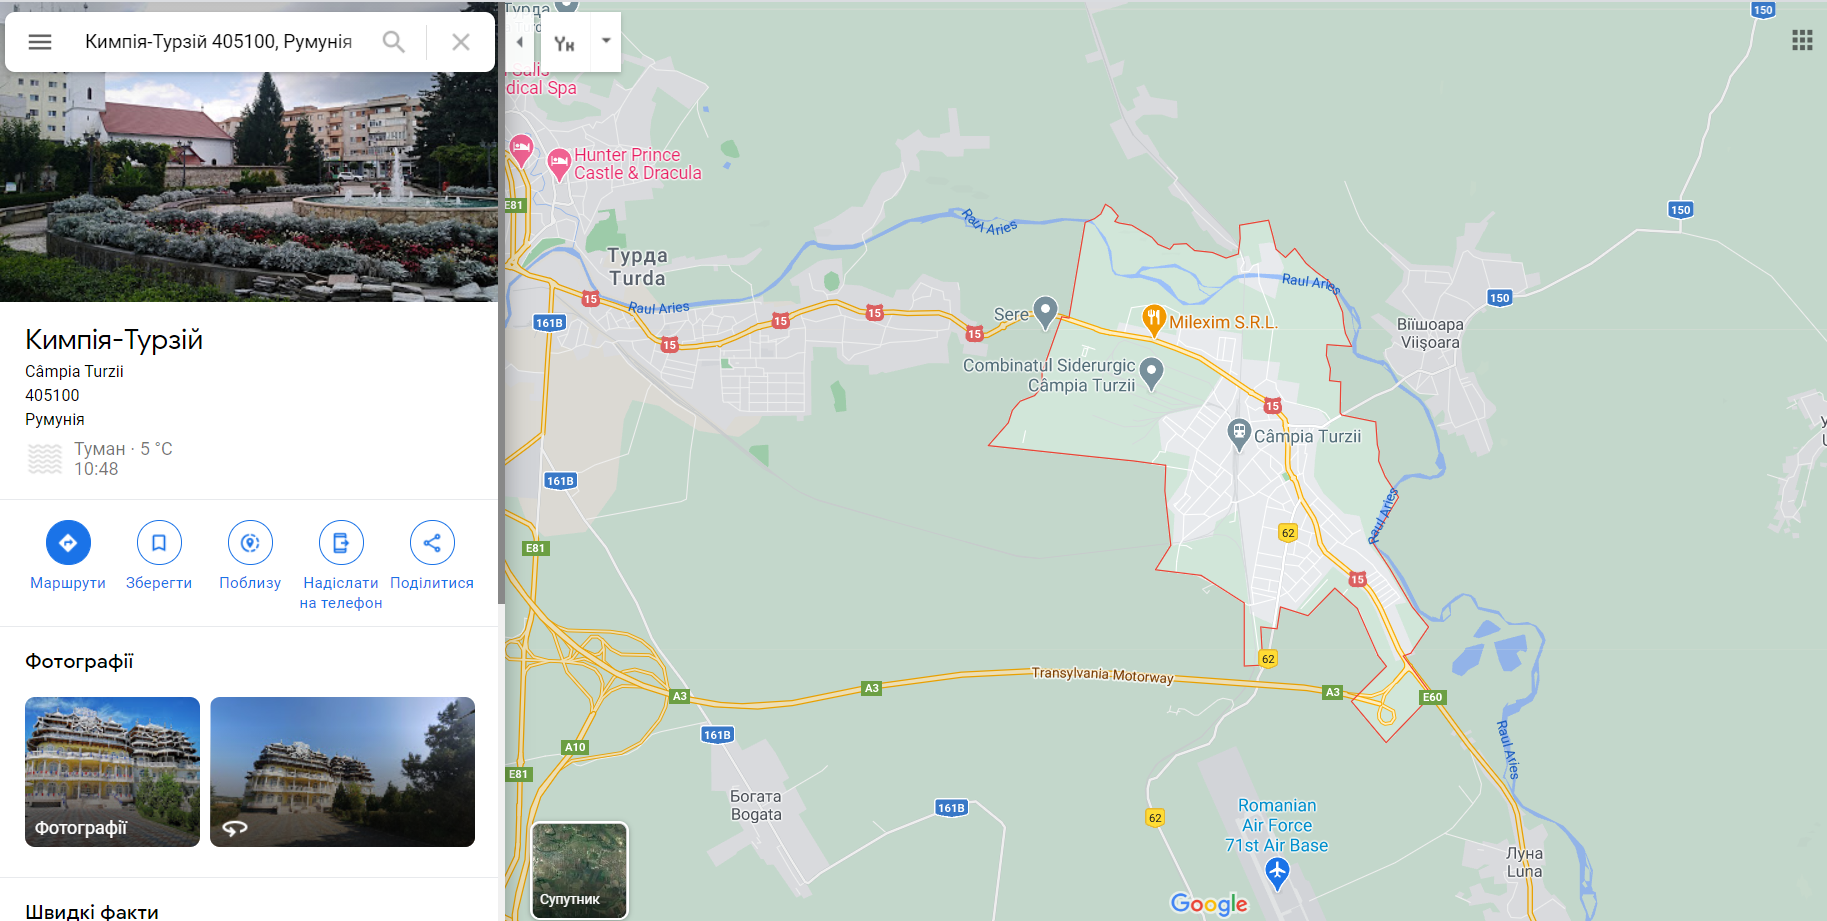 Румынская база Кымпия-Турзий на карте